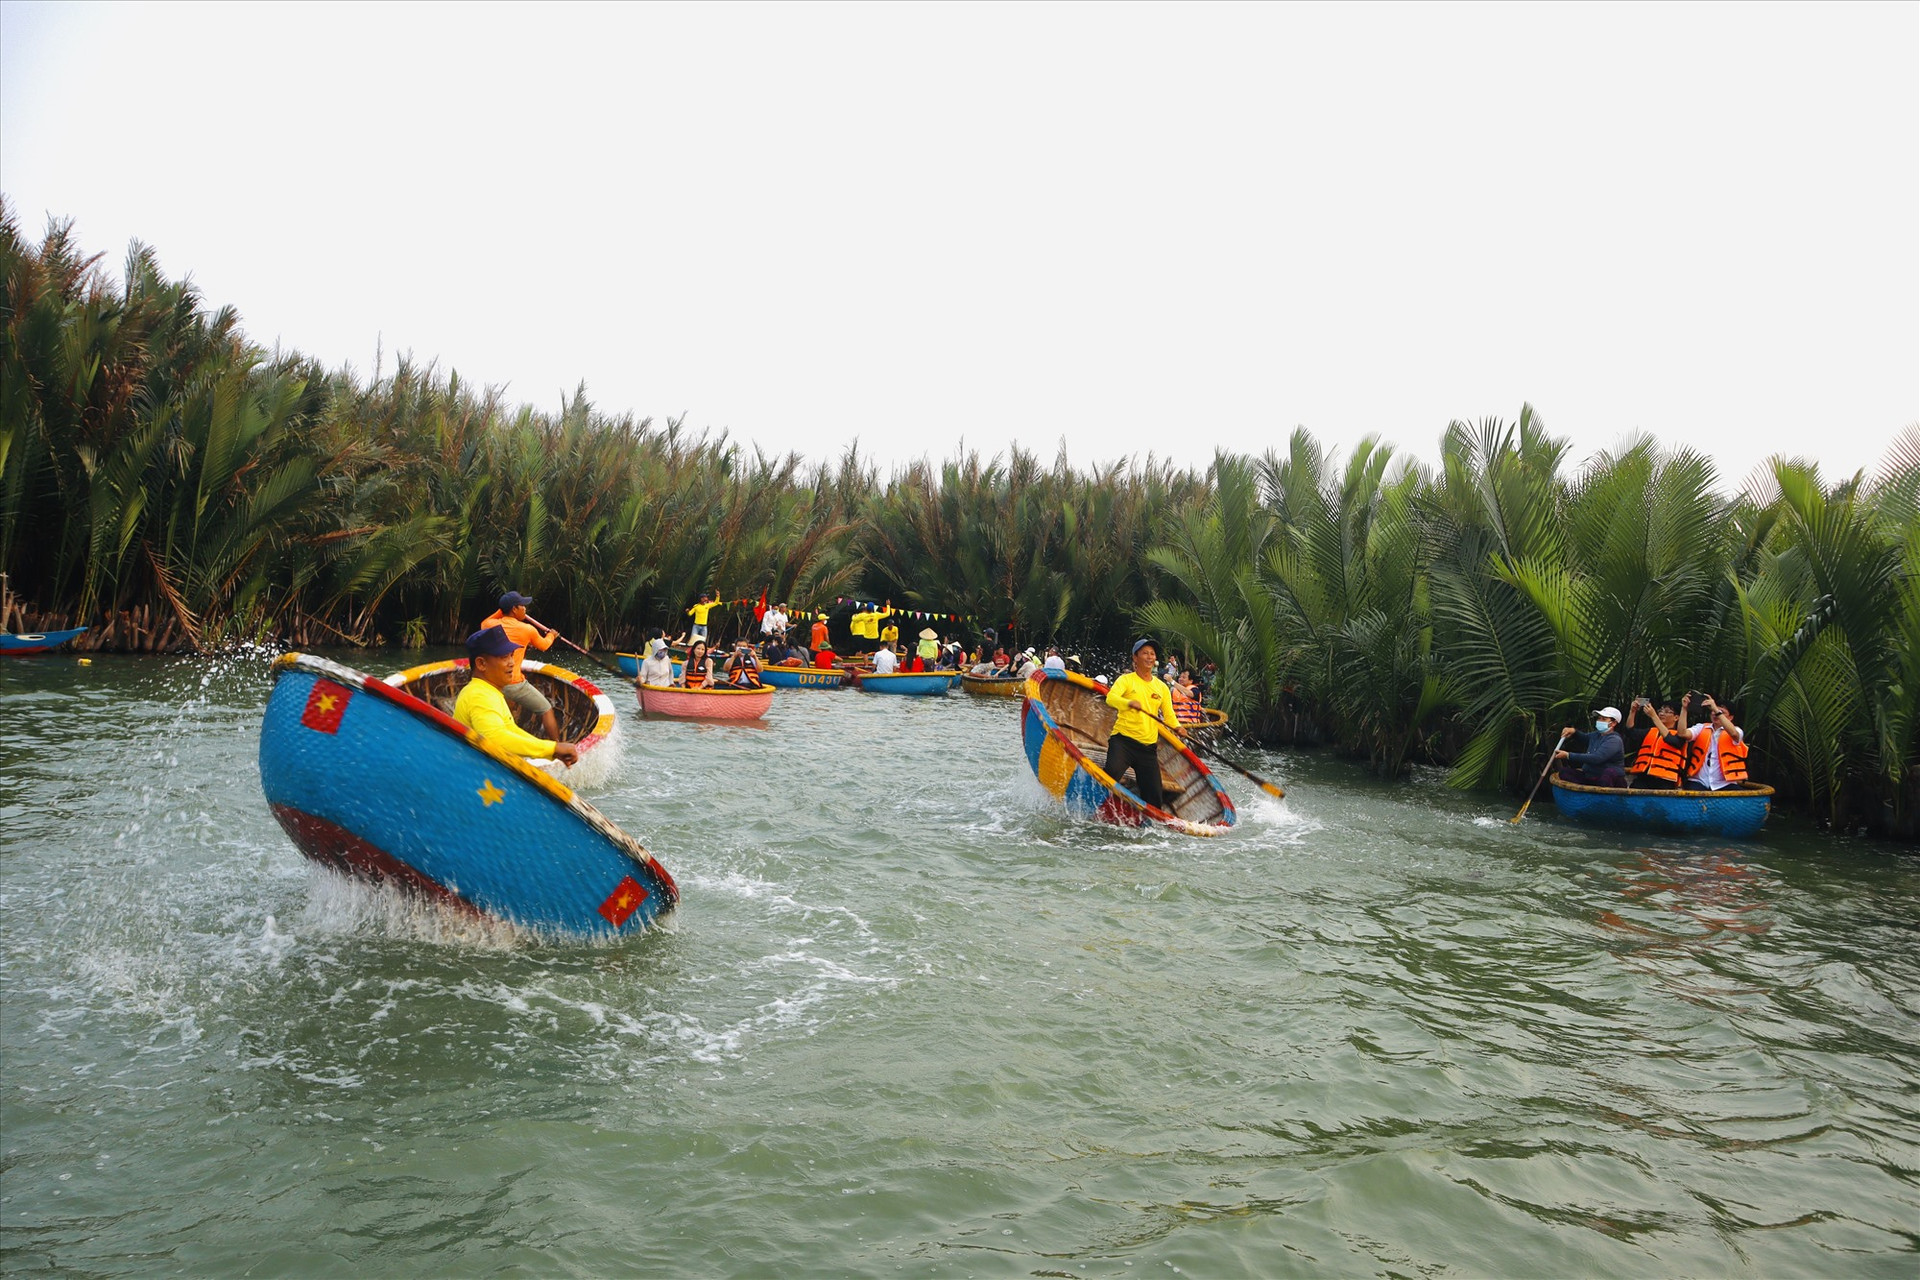 “Vũ điệu trên sông” là sản phẩm du lịch hấp dẫn ở rừng dừa Cẩm Thanh nhưng cần sắp xếp lại một cách bài bản để phát triển du lịch bền vững. Ảnh: Q.T